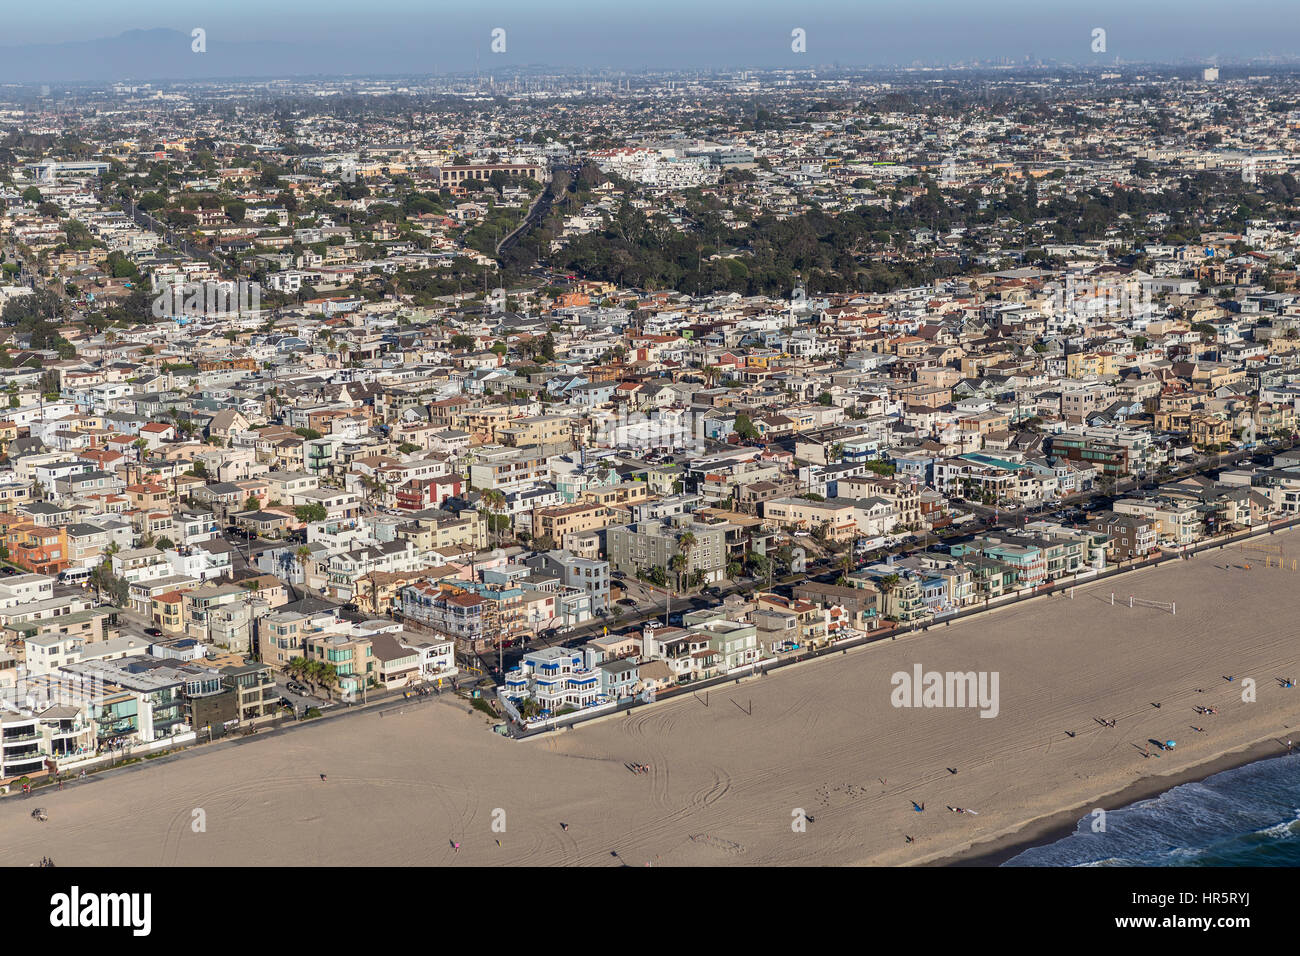 Hermosa Beach, Californie, USA - Le 16 août 2016 : Après-midi Vue aérienne des zones côtières Hermosa Beach et Manhattan Beach des collectivités du sud de Californ Banque D'Images